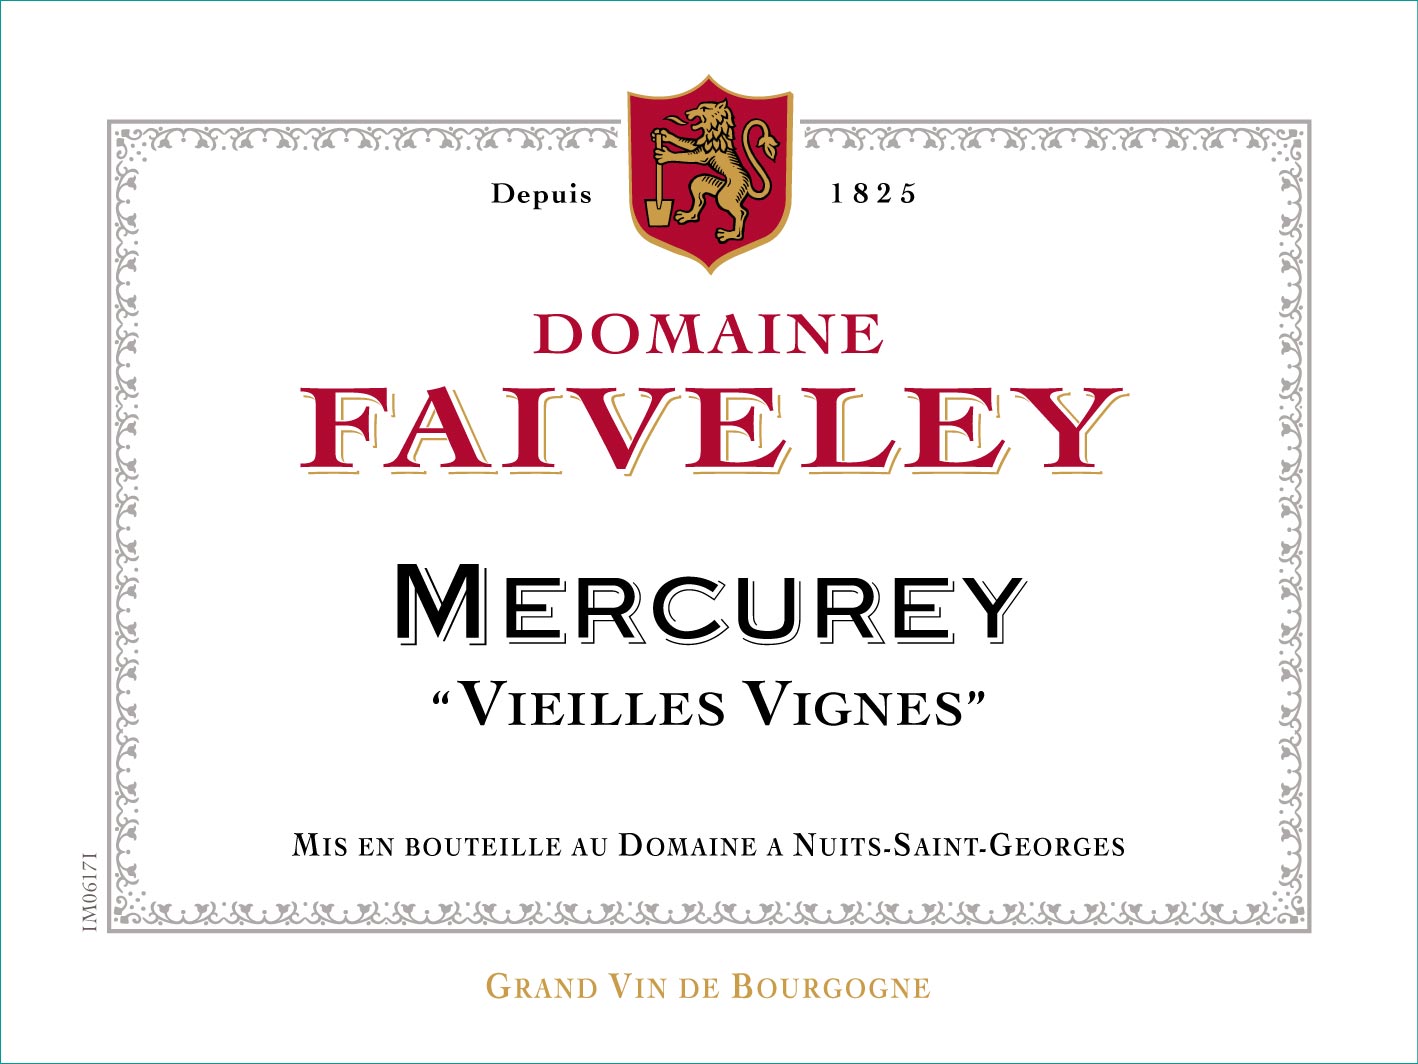 2021 Domaine Faiveley Mercurey Rouge Vieilles Vignes - click image for full description